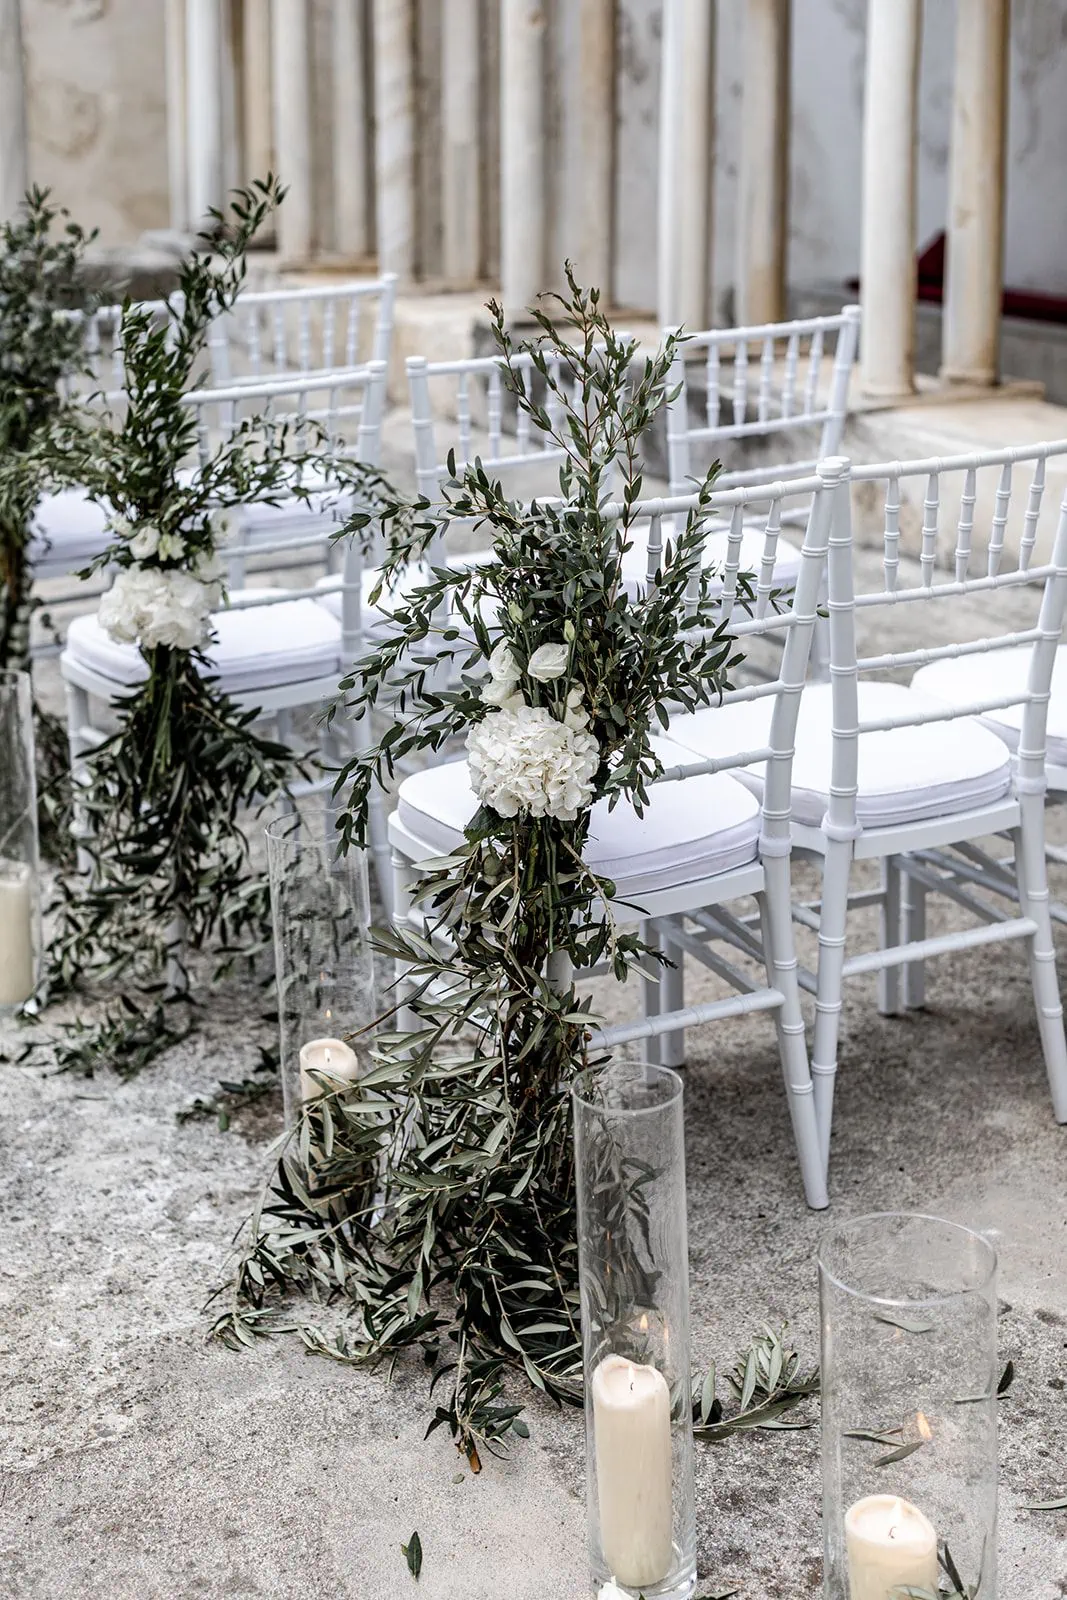 Classic, timeless Amalfi Coast Italy wedding ceremony details